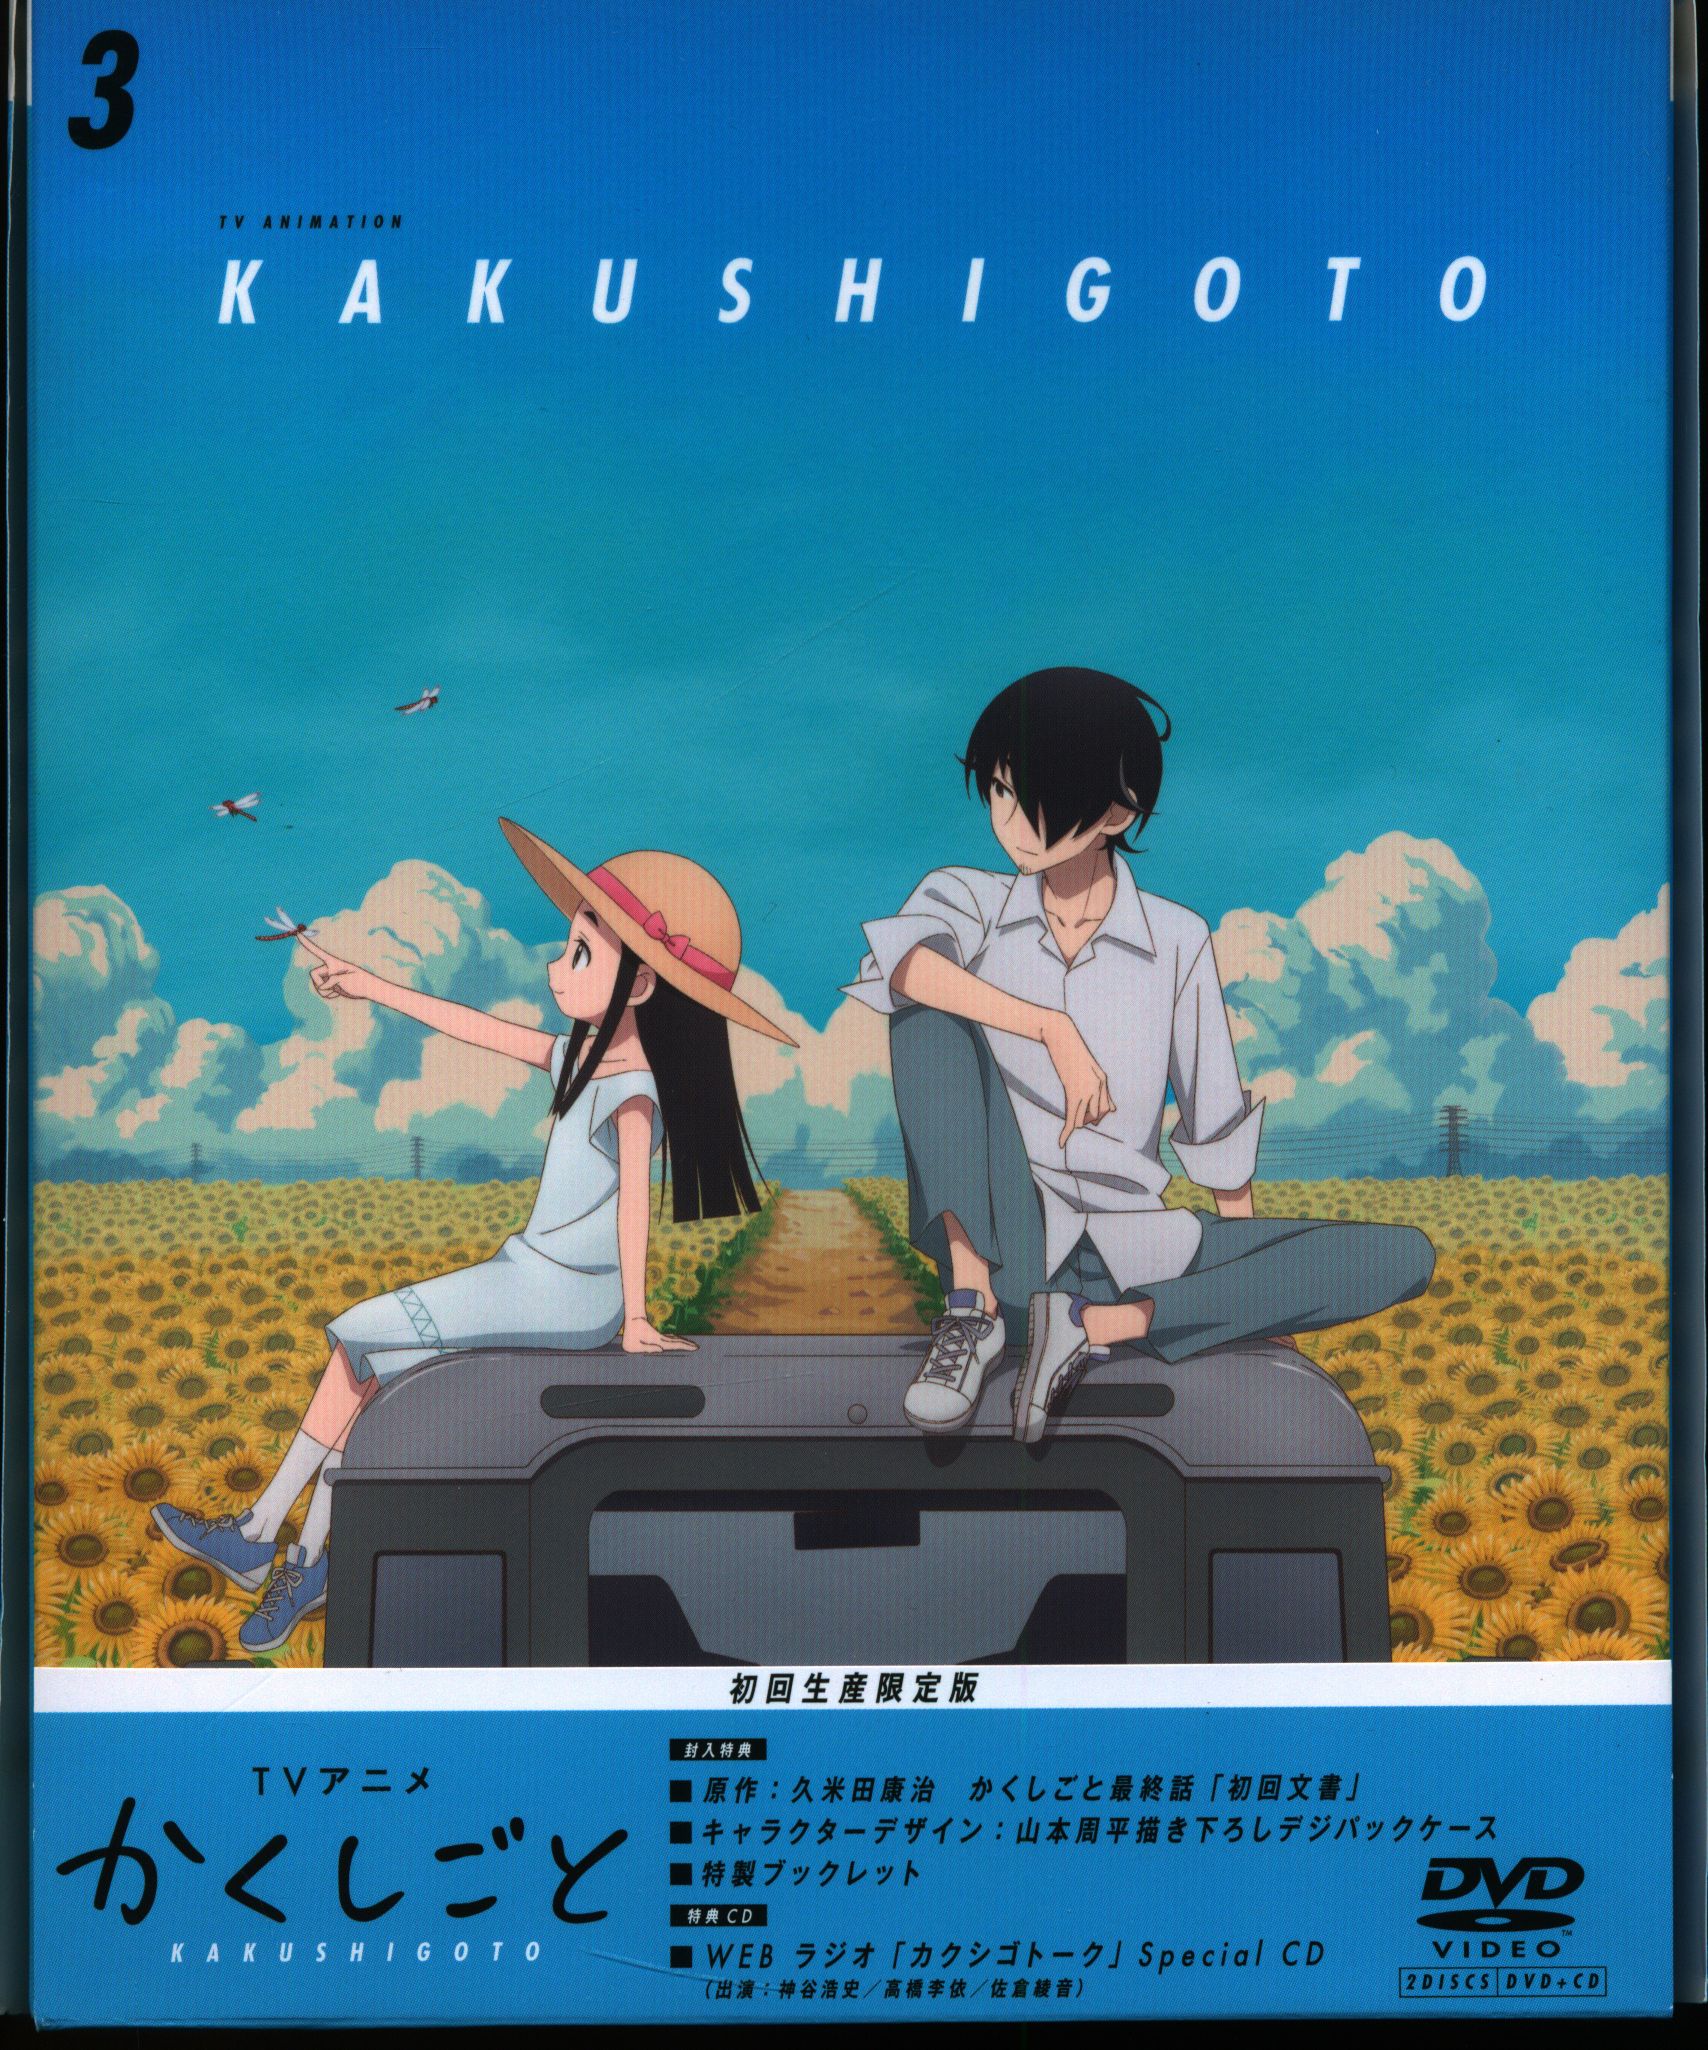 Kakushigoto episode 1 anime review - Bateszi Anime Blog